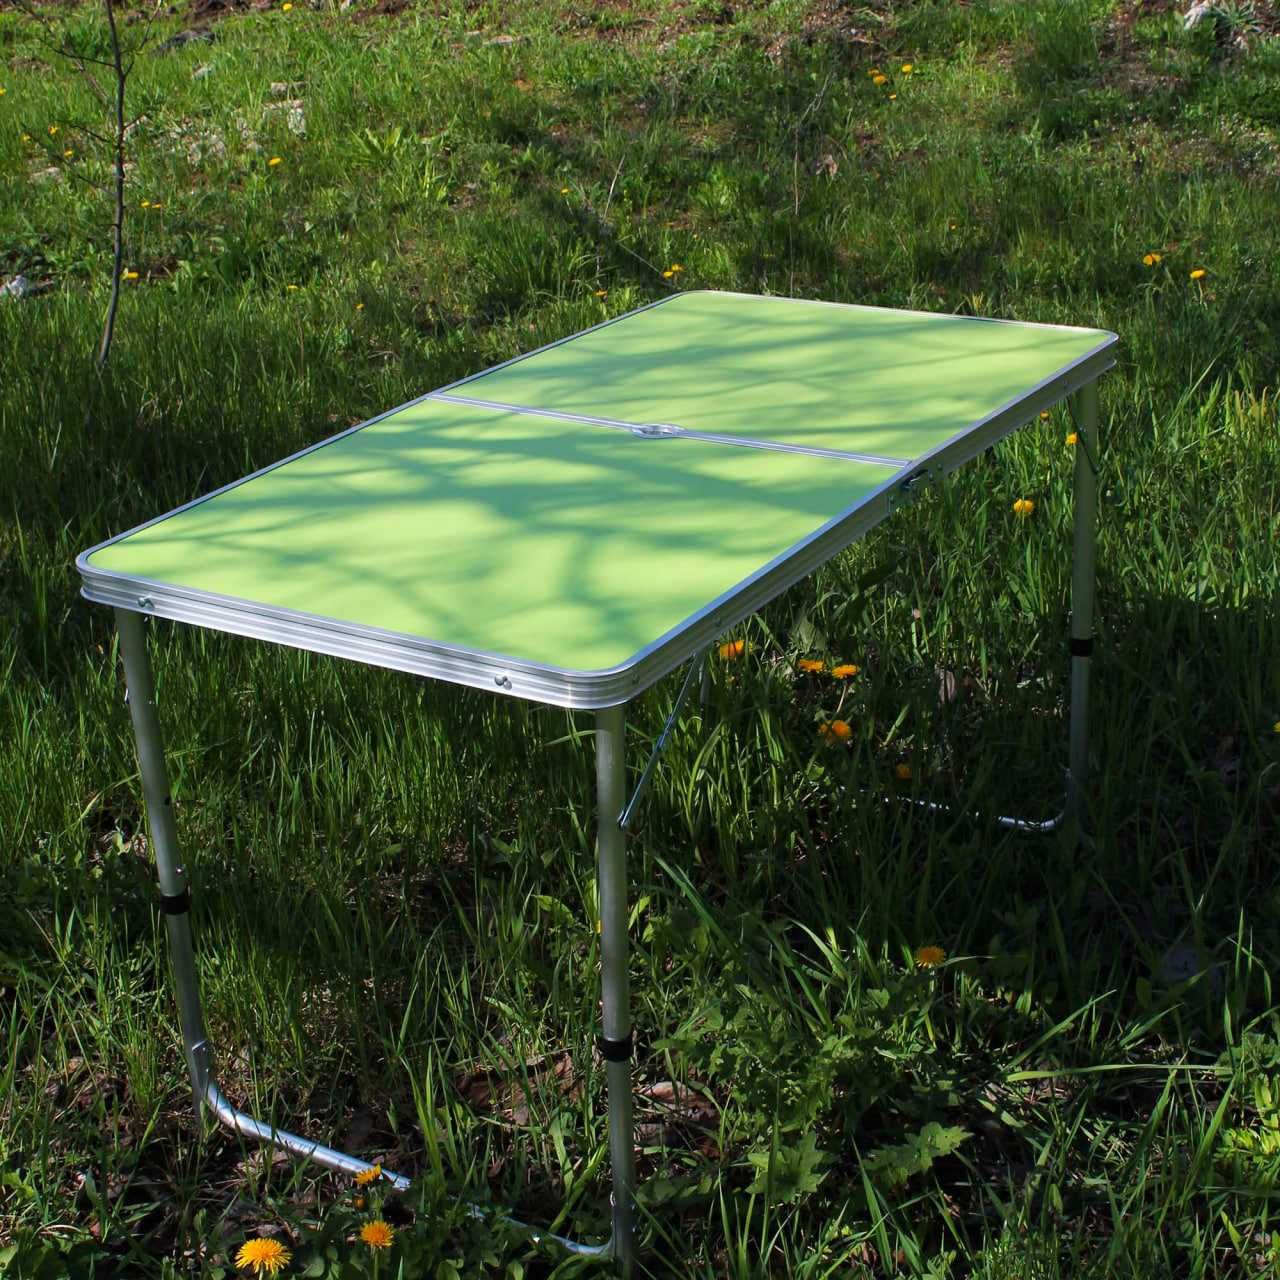 Стол алюминиевый раскладной для пикника + 4 стула, чемодан зеленый